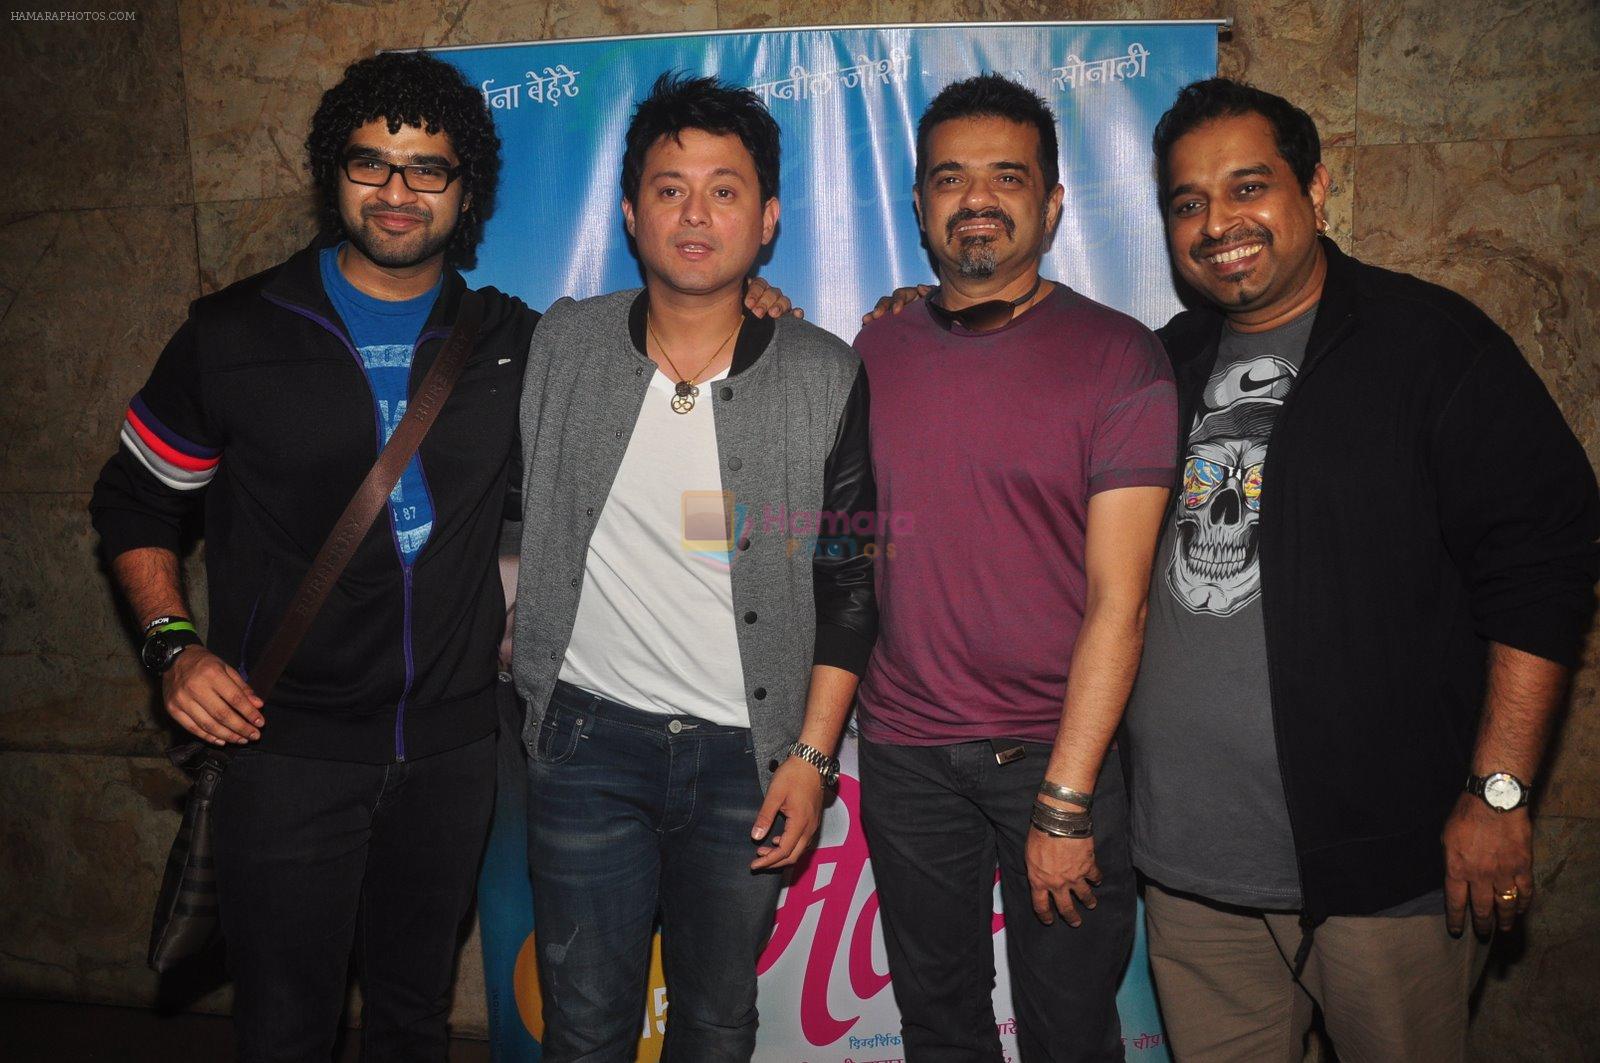 Siddharth Mahadevan, Swapnil Joshi, Shankar Mahadevan, Ehsaan Noorani at Marathi film screening in Lightbox, Mumbai on 17th Dec 2014